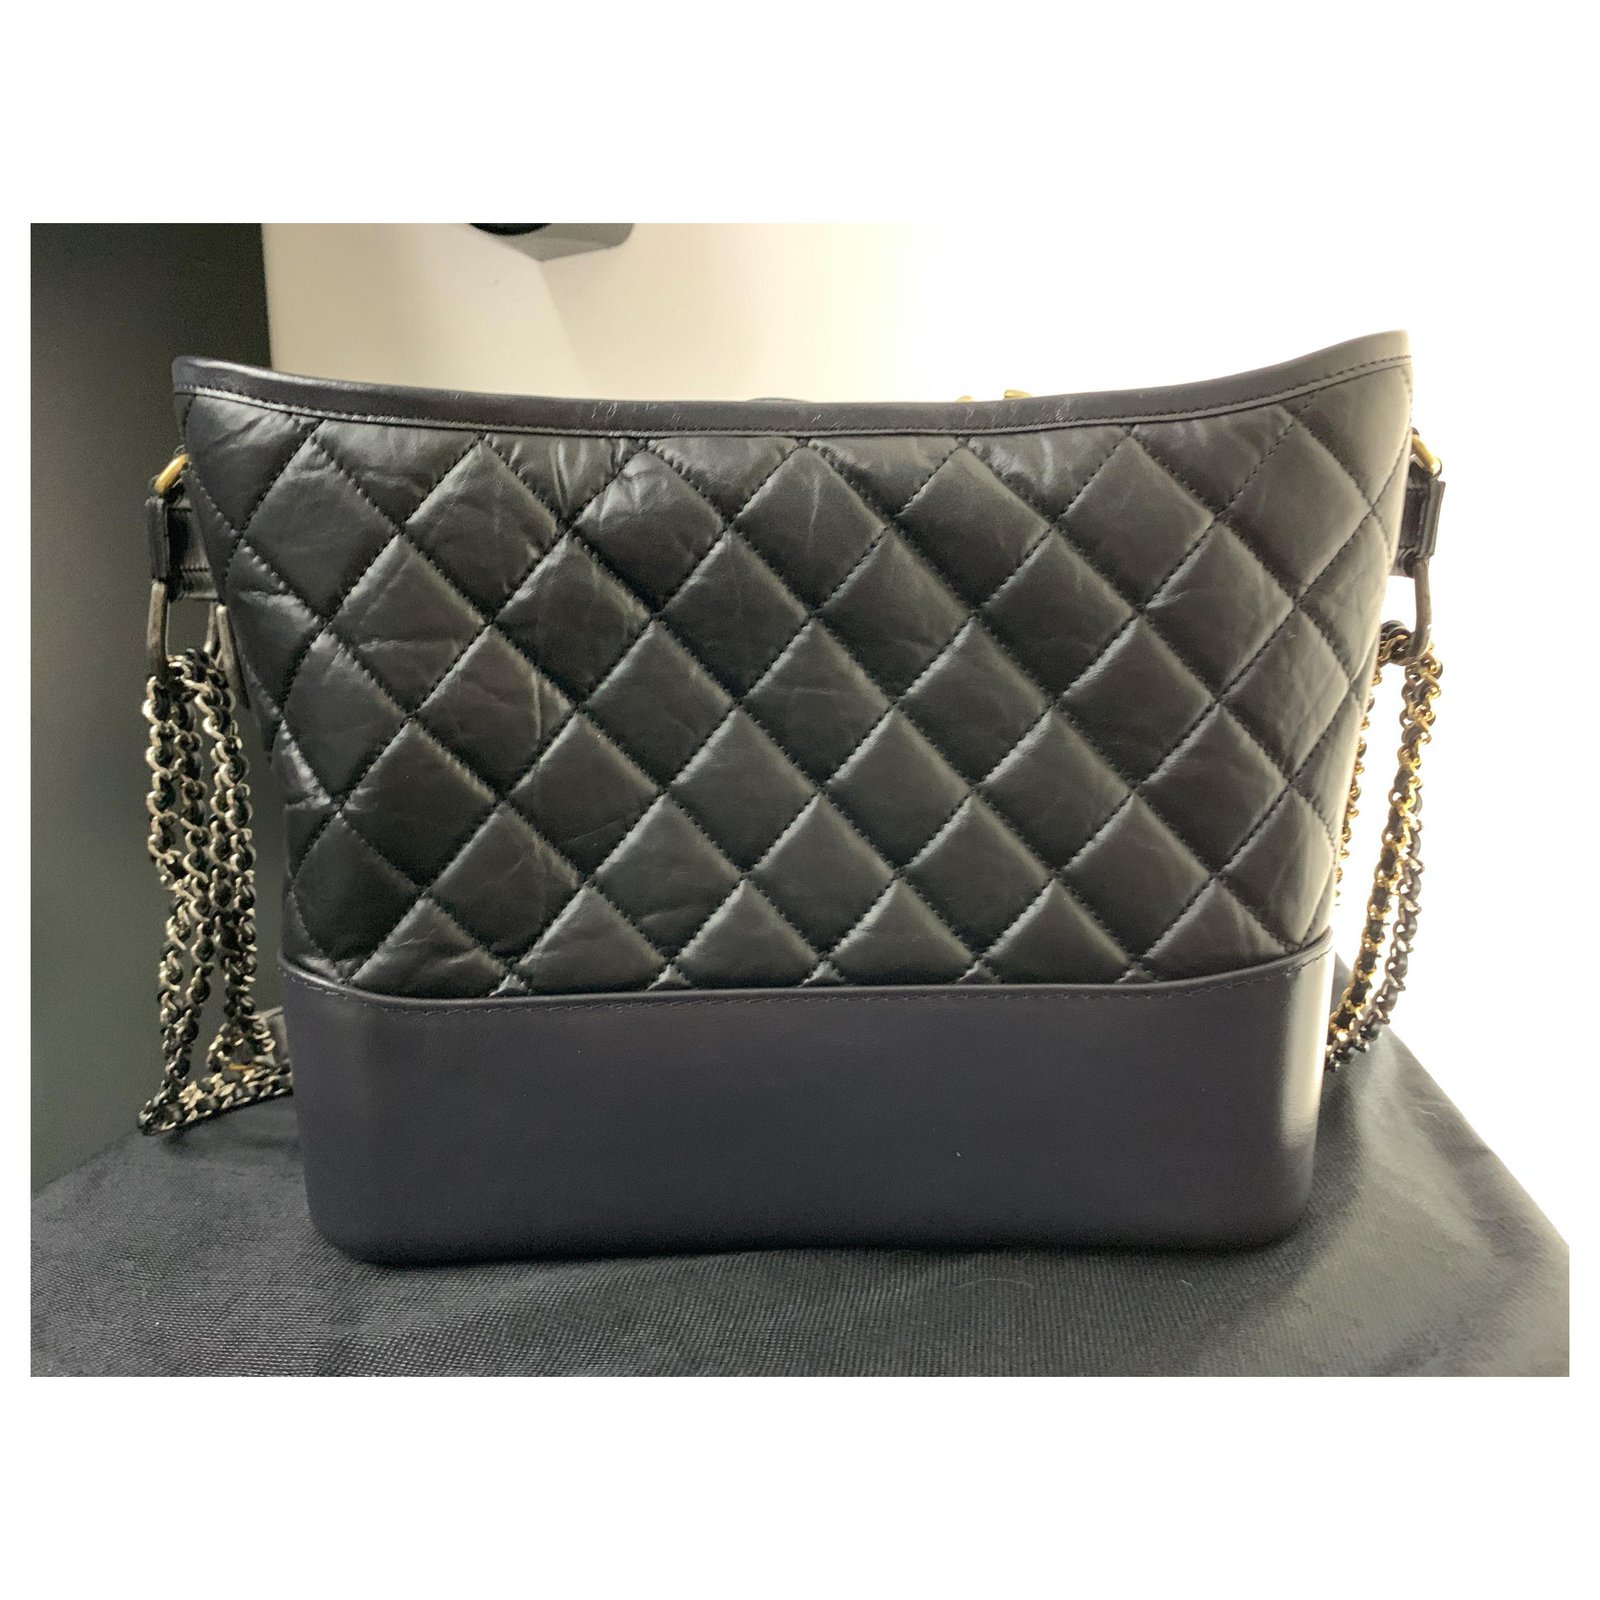 Chanel Large Gabrielle Hobo - Black Hobos, Handbags - CHA922060